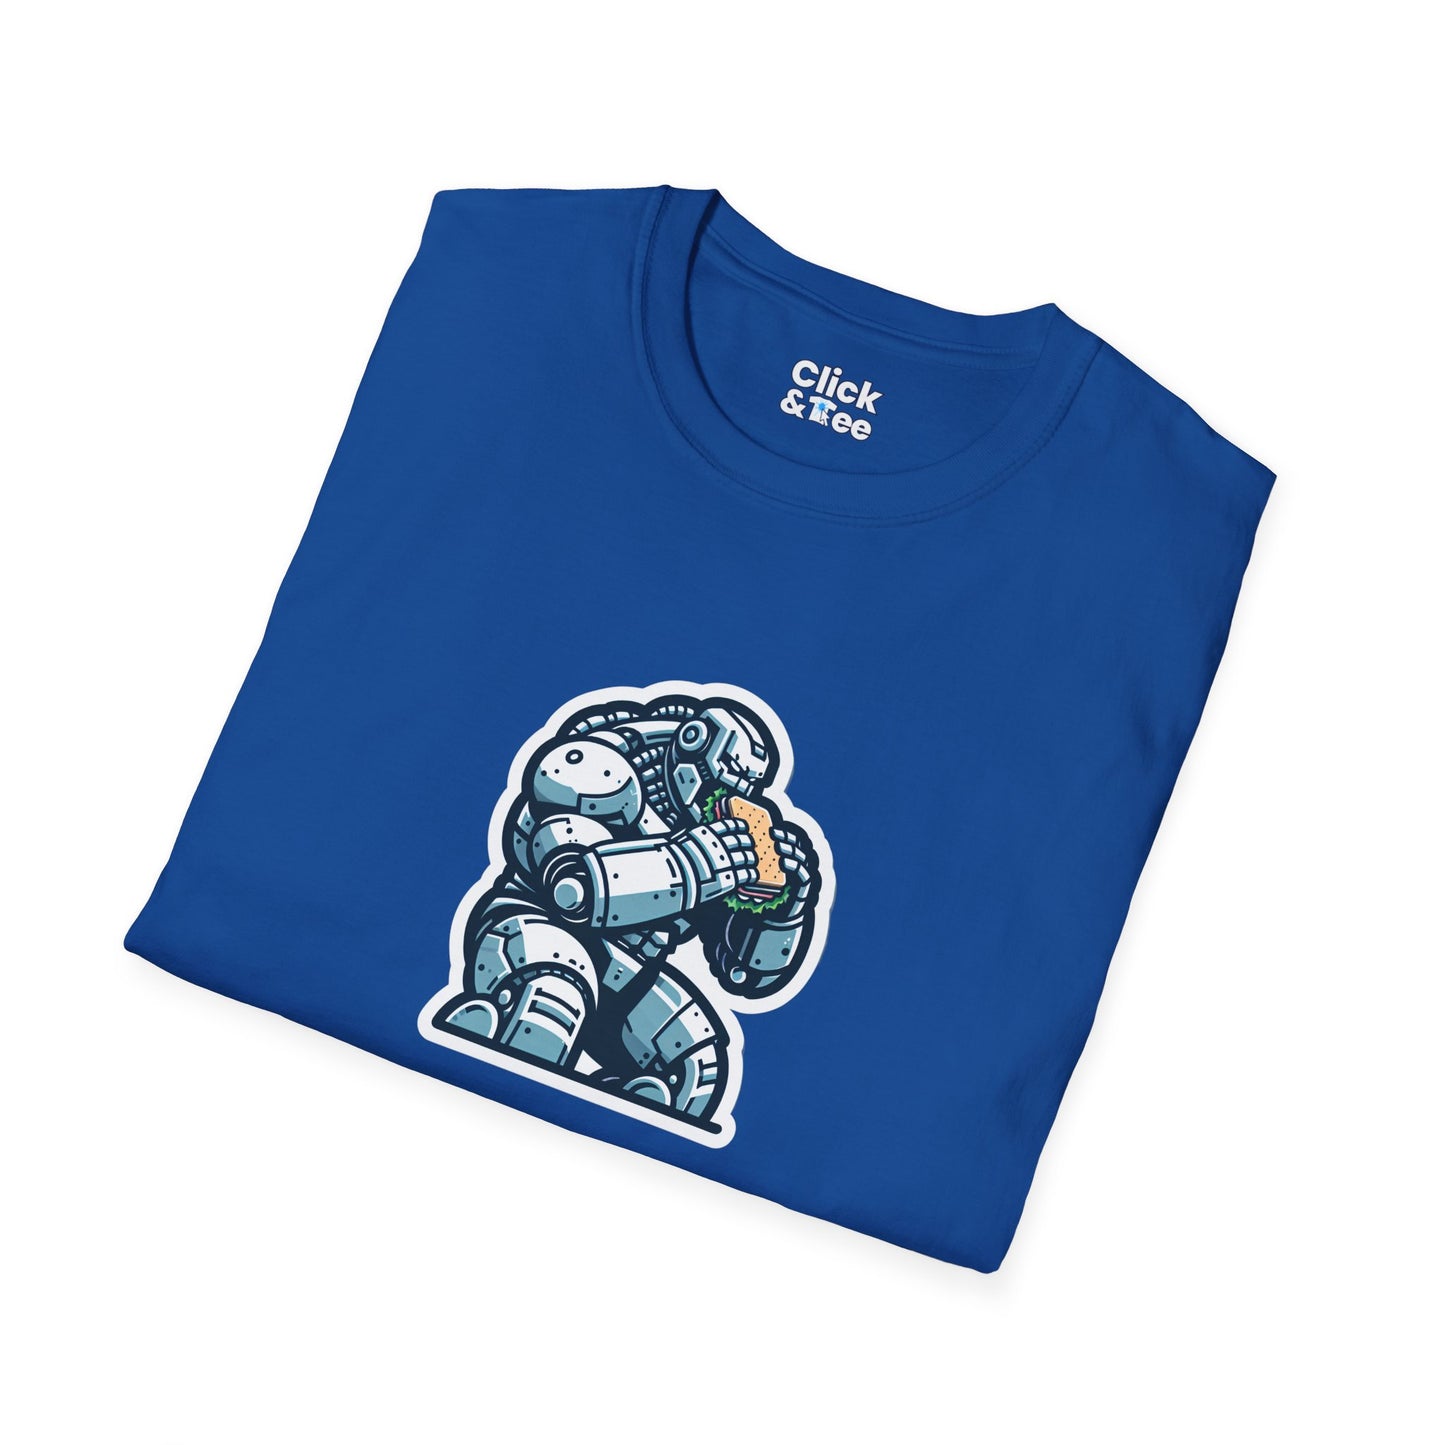 Digital Art T-Shirt - Hulking Robot Eating a sandwich  - Digital Art Style T-Shirt